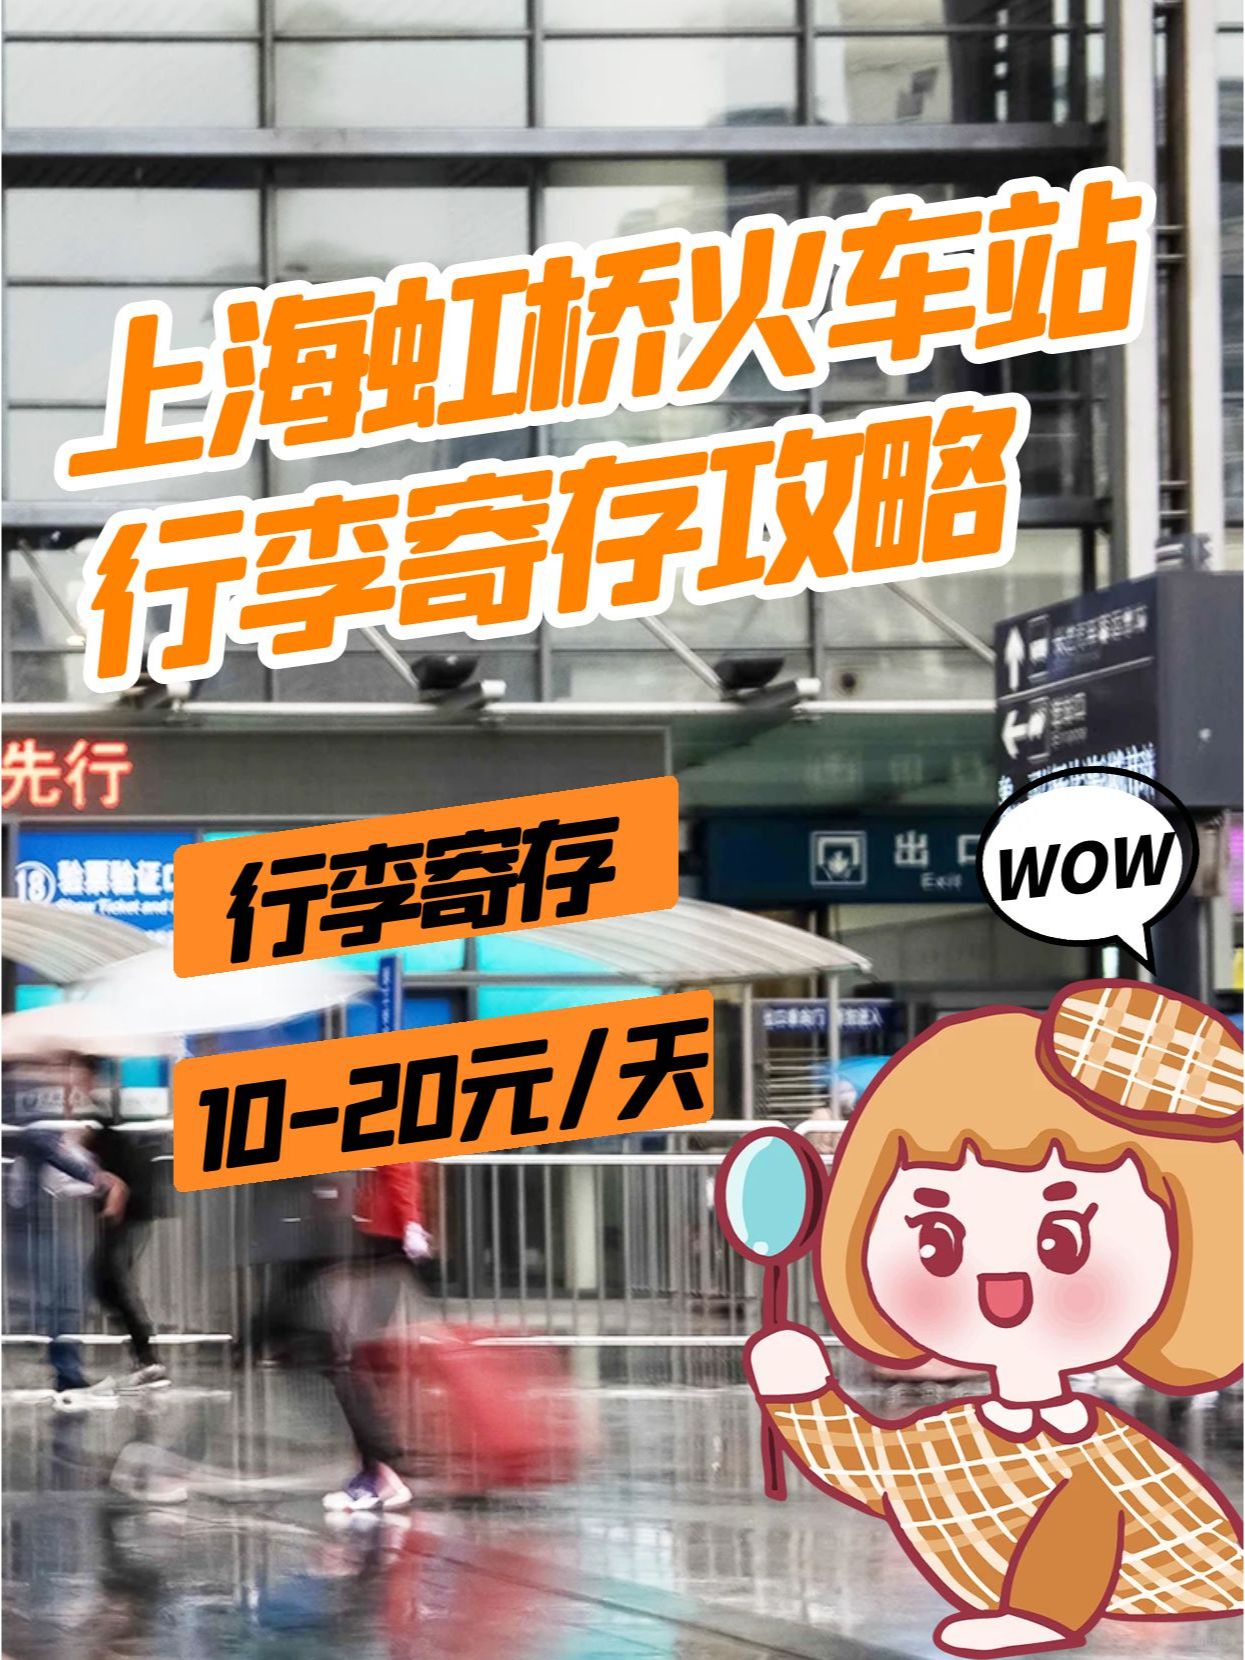 上海虹桥火车站丨行李寄存攻略10-20元/天～